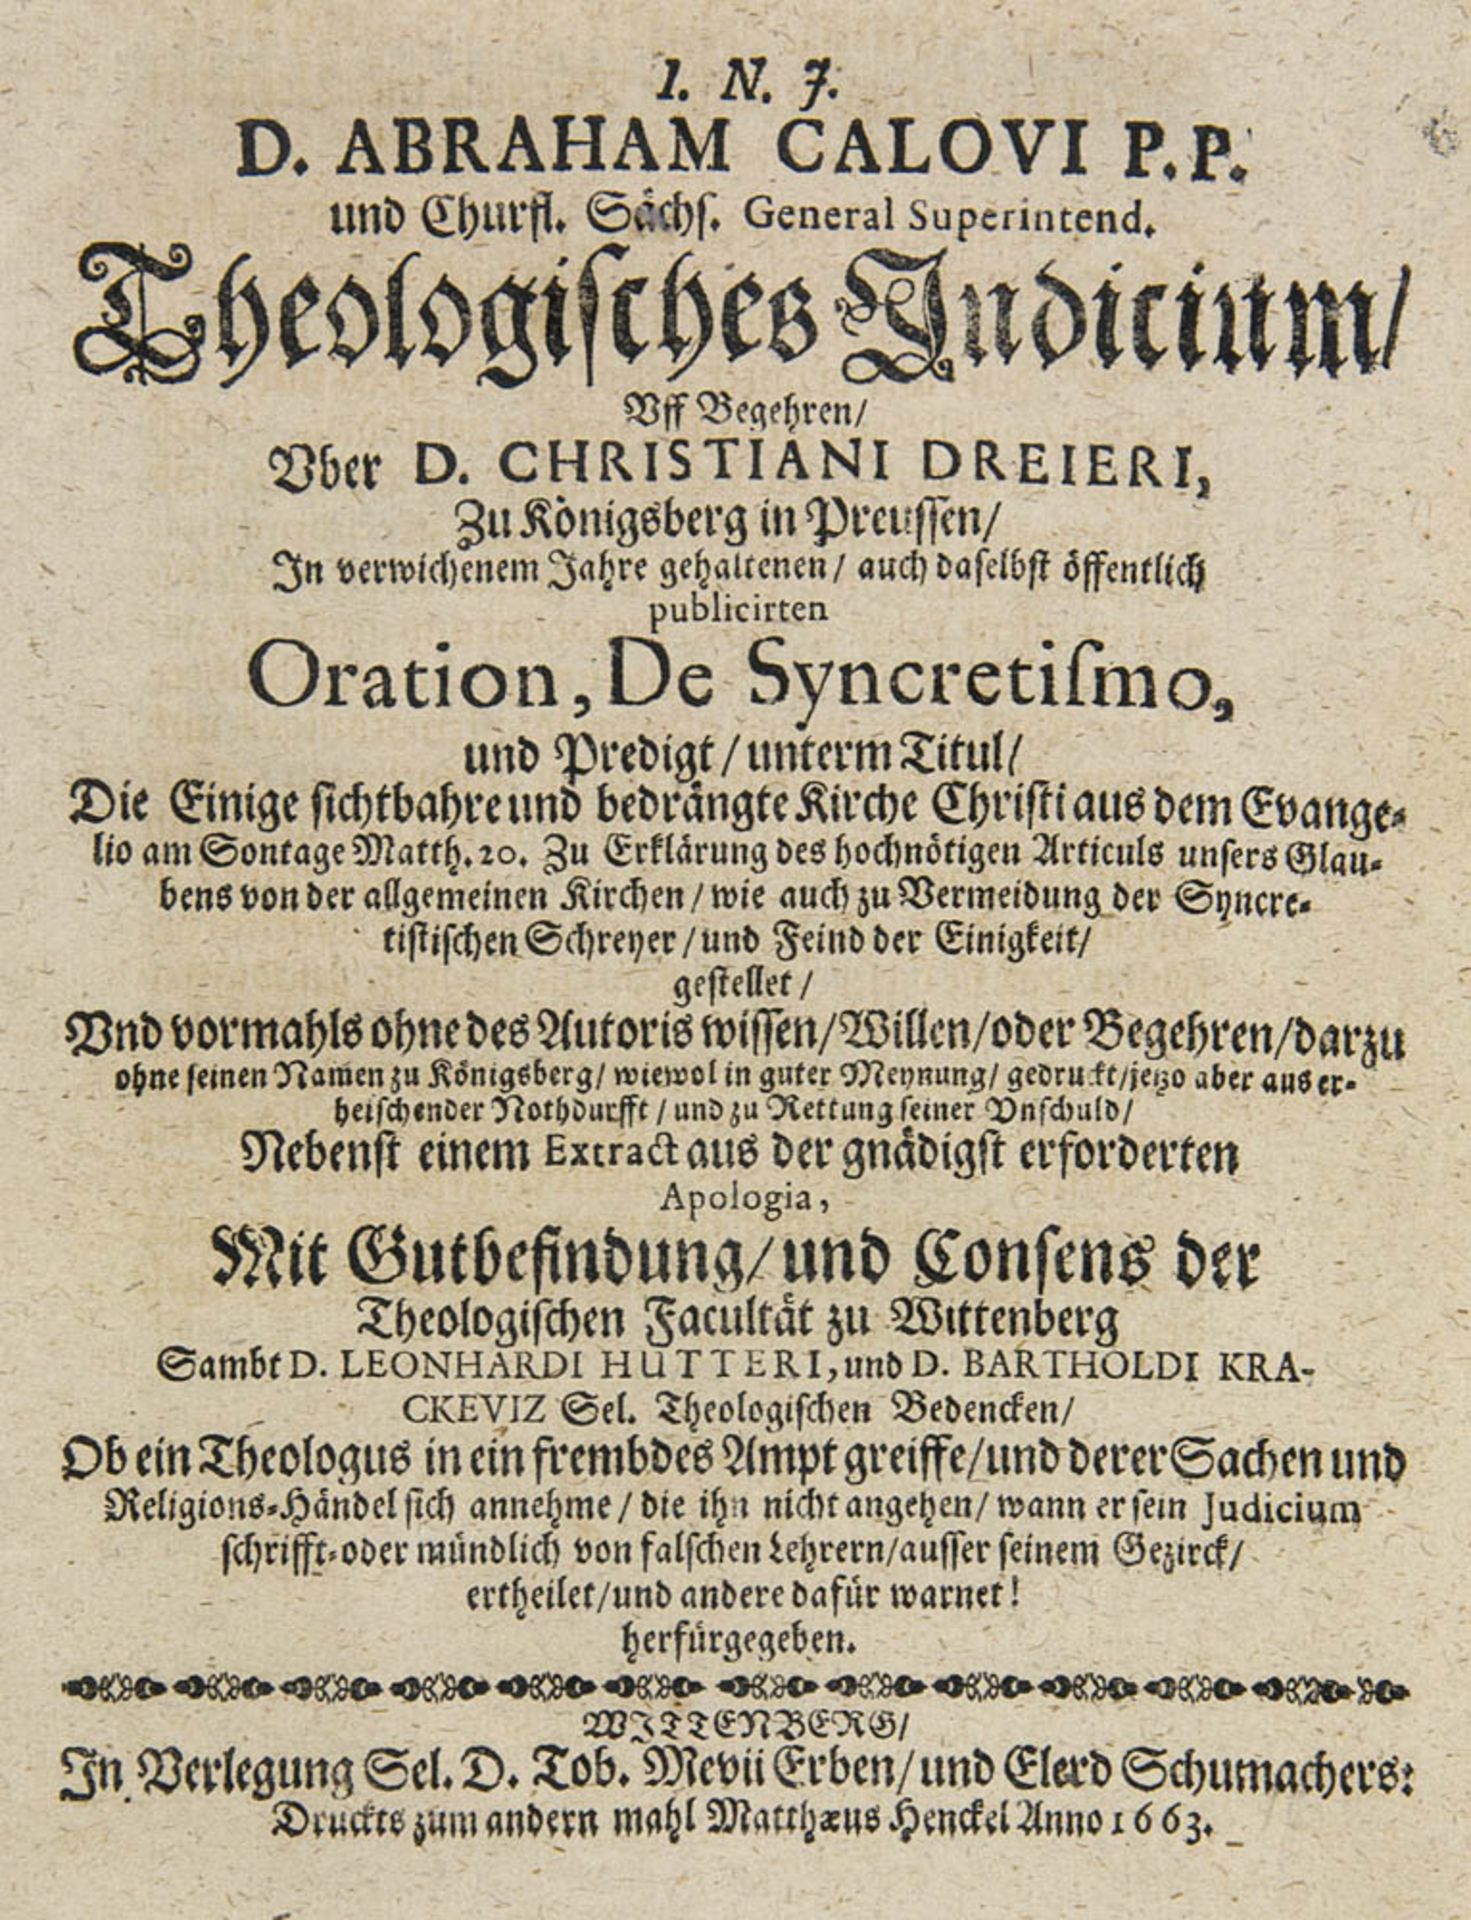 Calov, Abraham. Theologisches Indicium: Uff Begehren, über D. Christiani Dreieri, zu Königsberg in